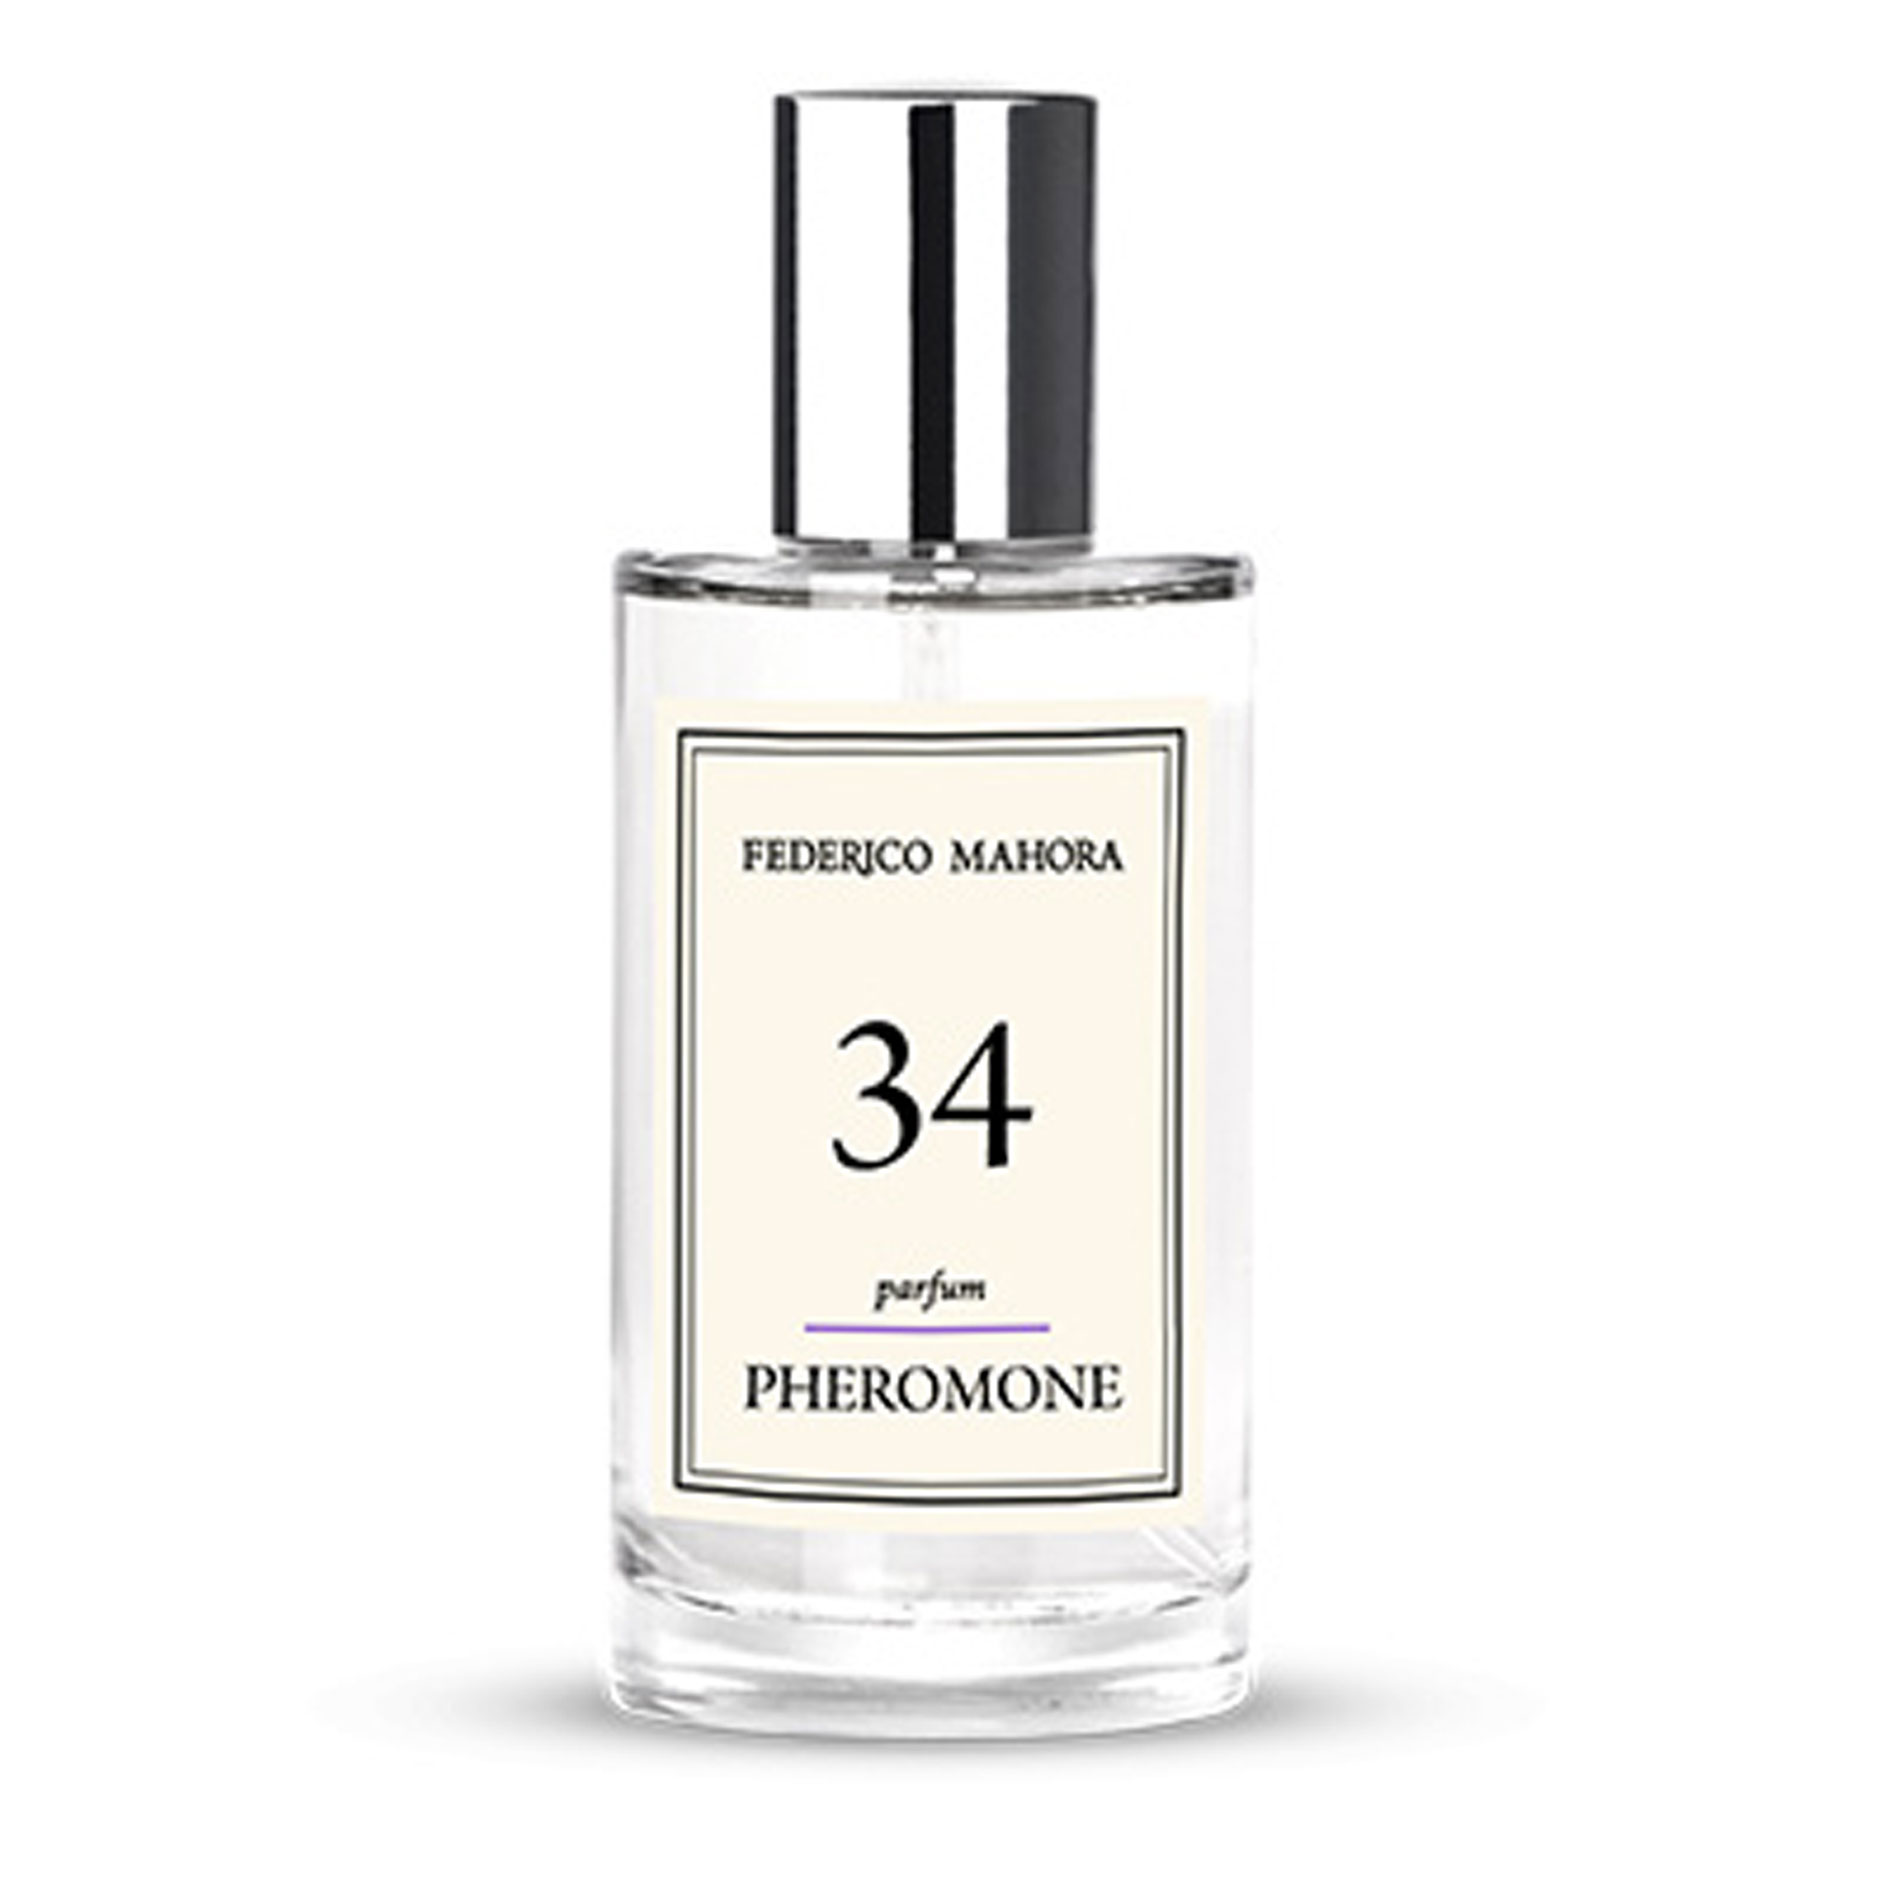 PURE 034 Parfum Pheromone Federico Mahora